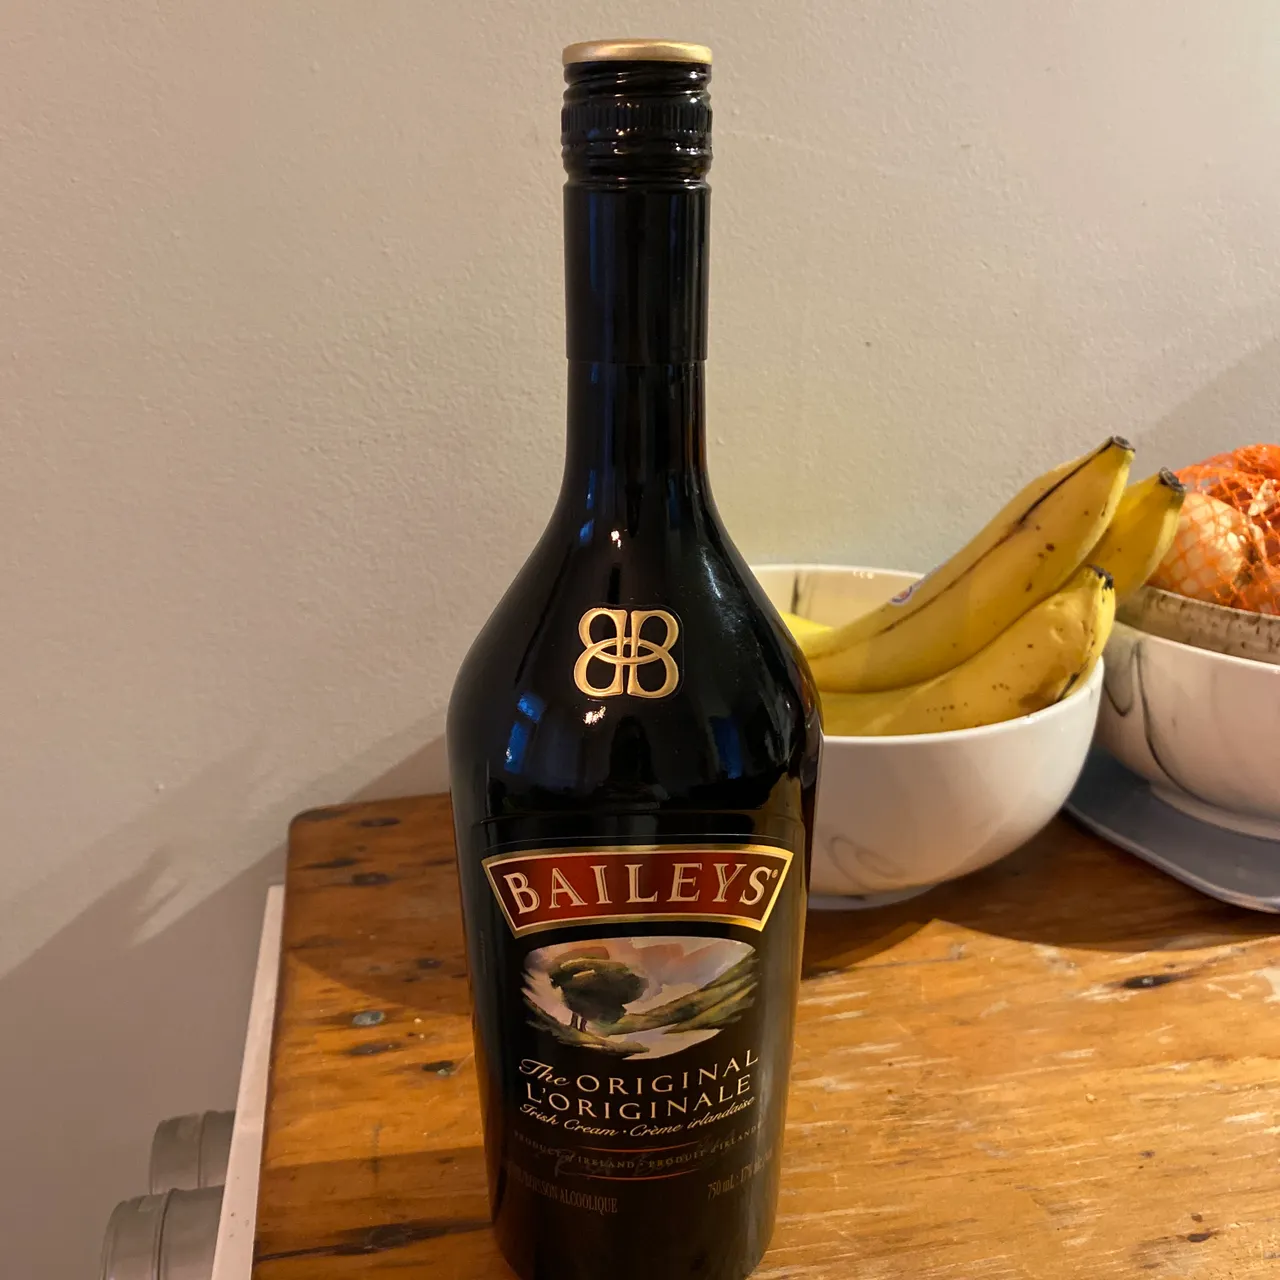 750ml bottle of Baileys photo 1